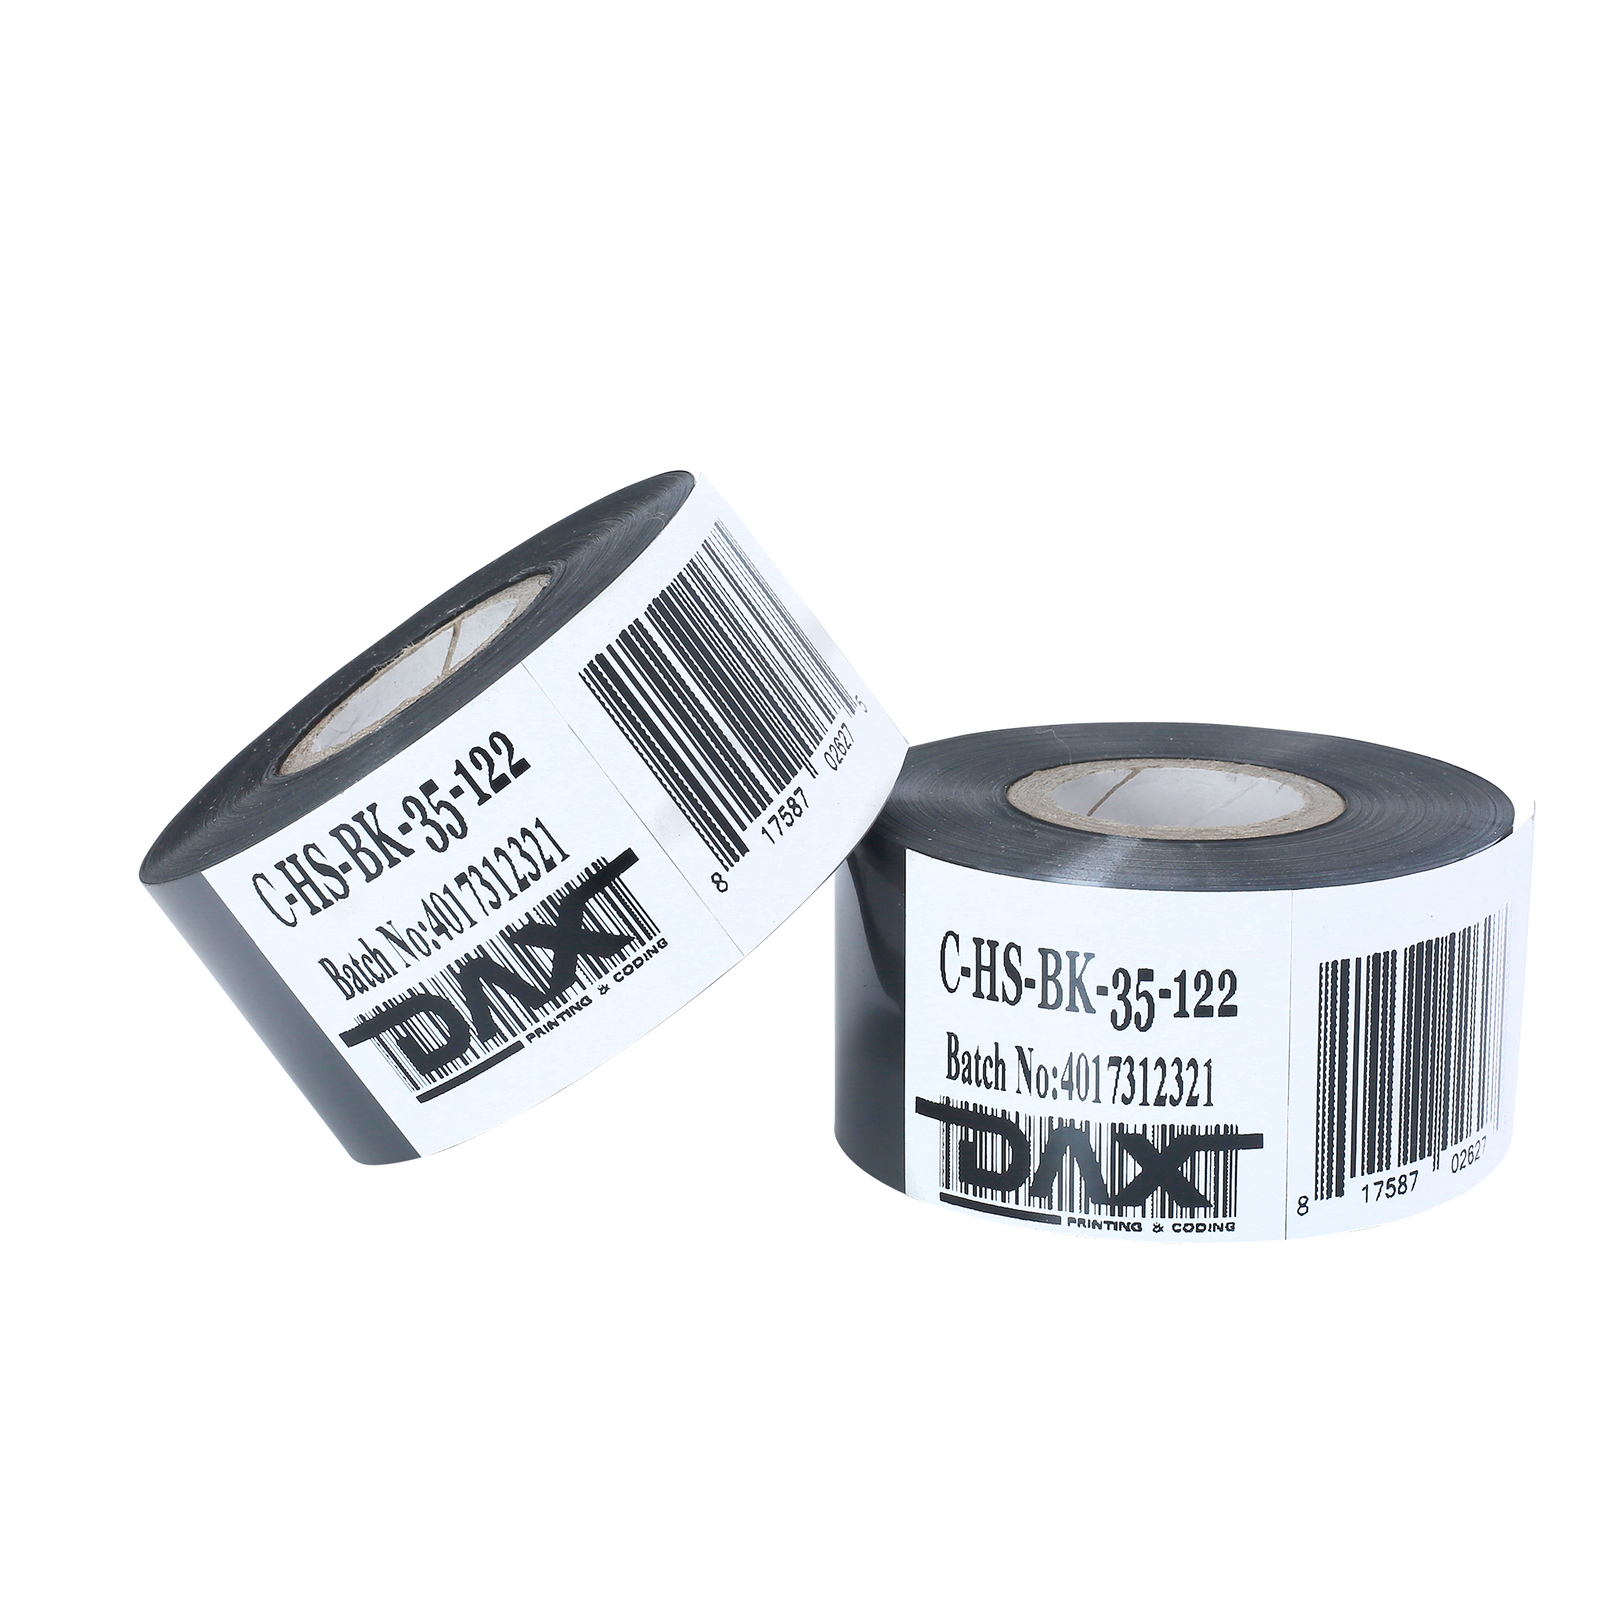 set of 2 35mm black hot DAX foil stamp rolls over white background